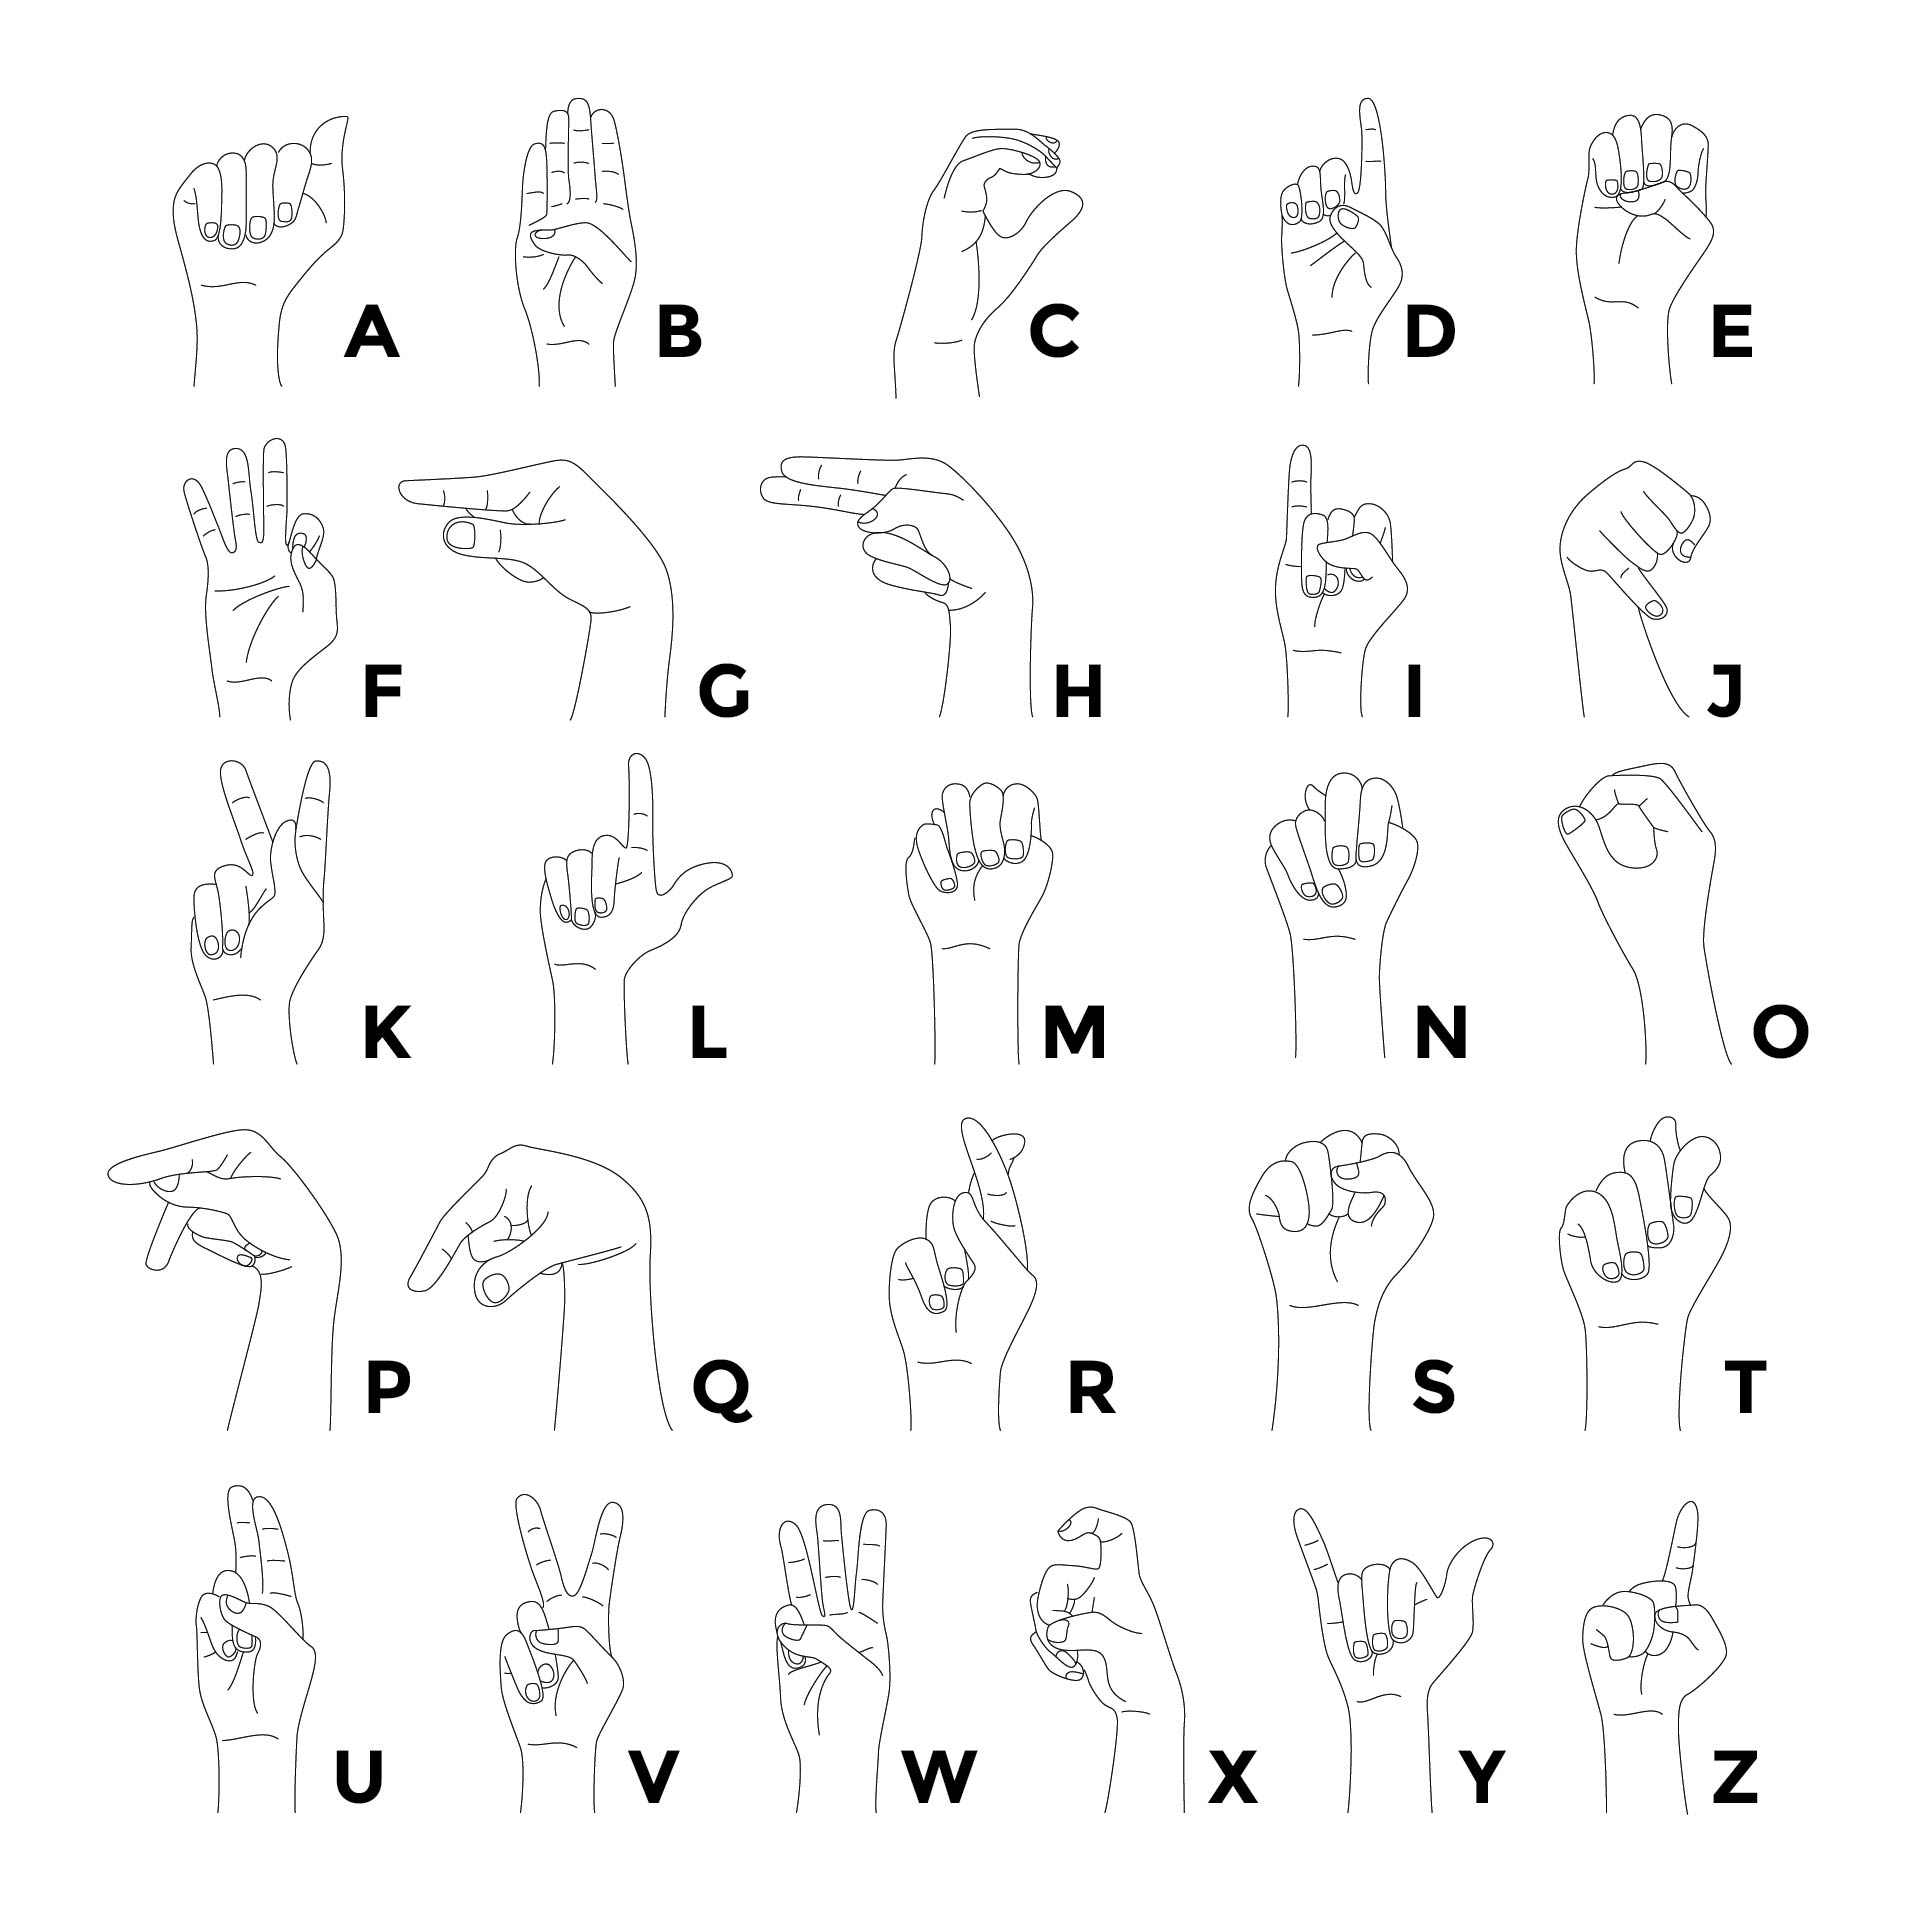 sign-language-chart-printable